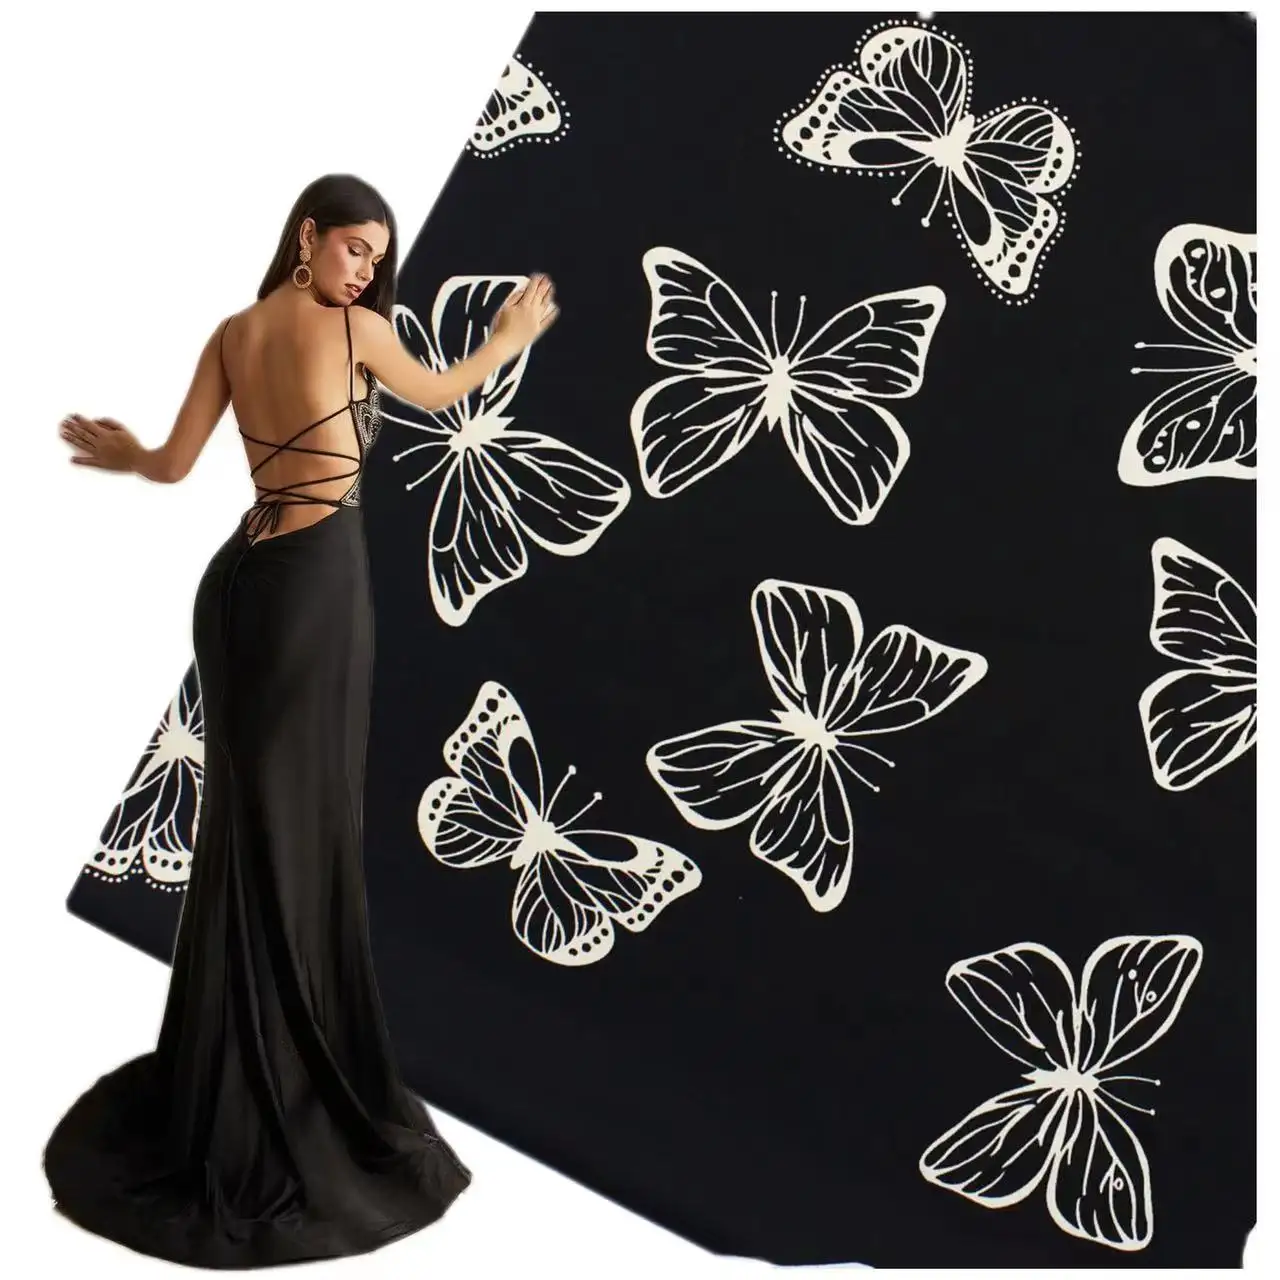 Vestido de noche elegante patrón de mariposa brillante estampado digital piel suave satén tela de seda para vestido largo